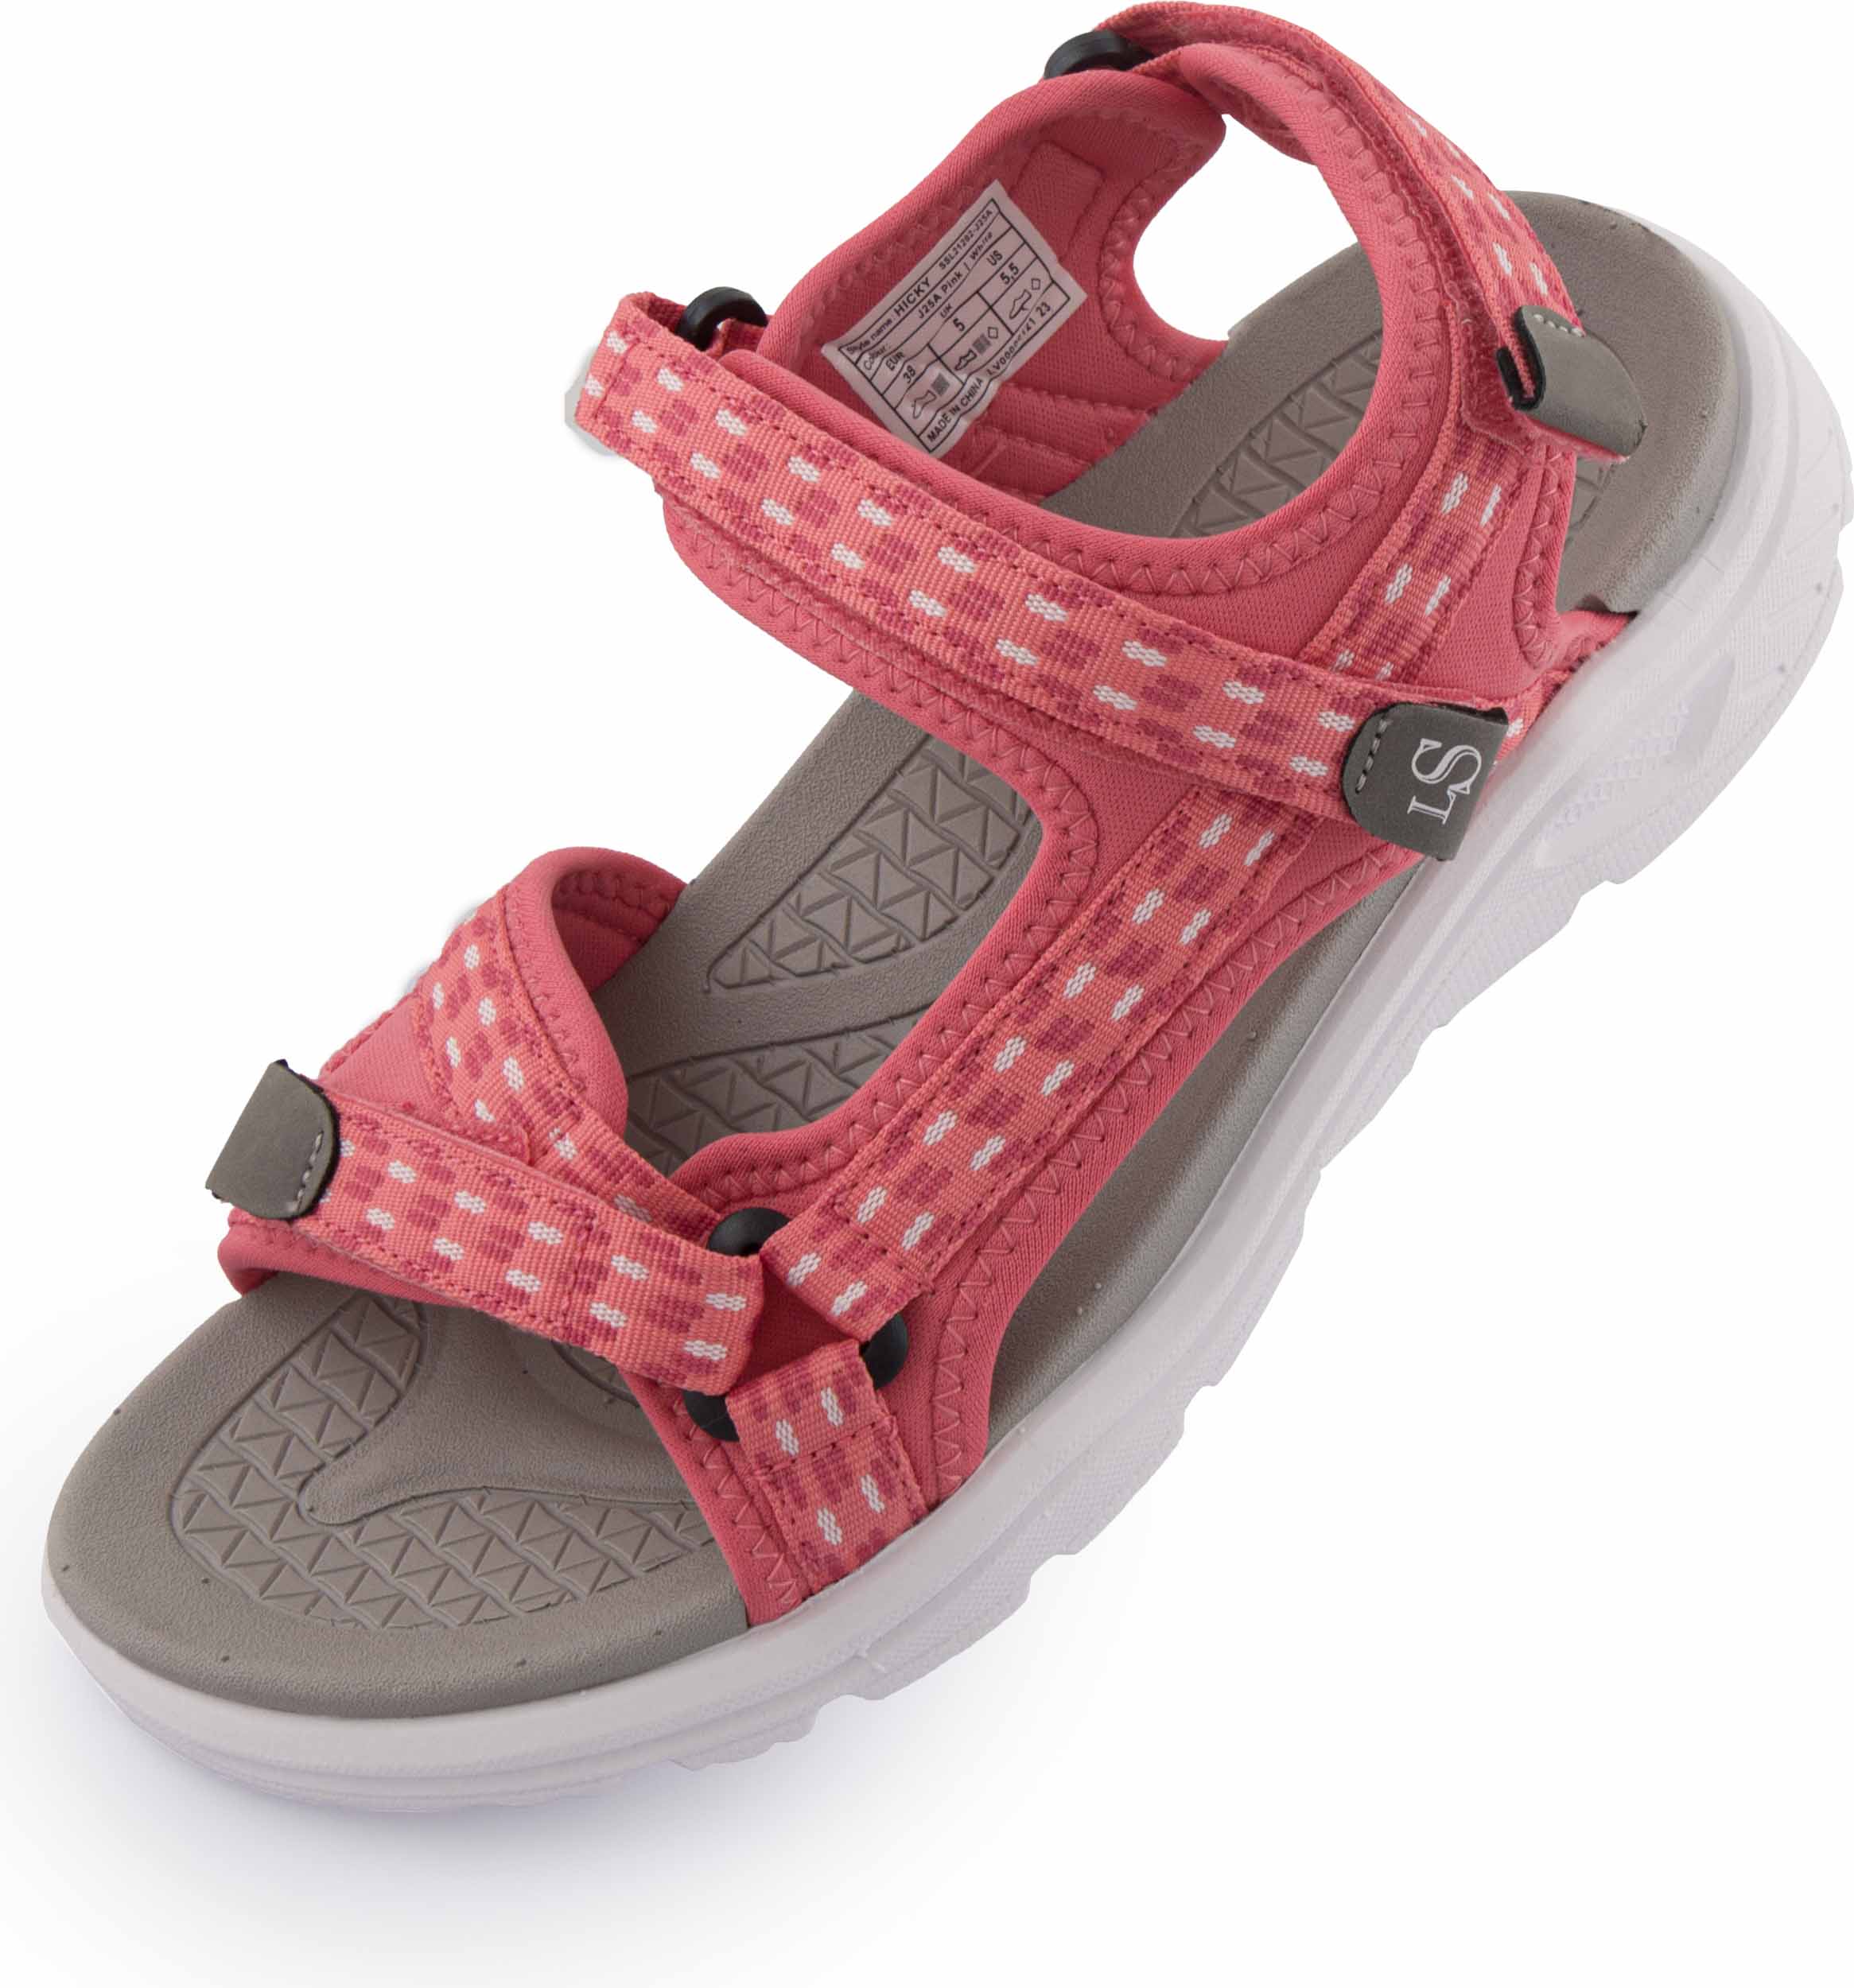 Dámské sandály Loap Hicky pink|40